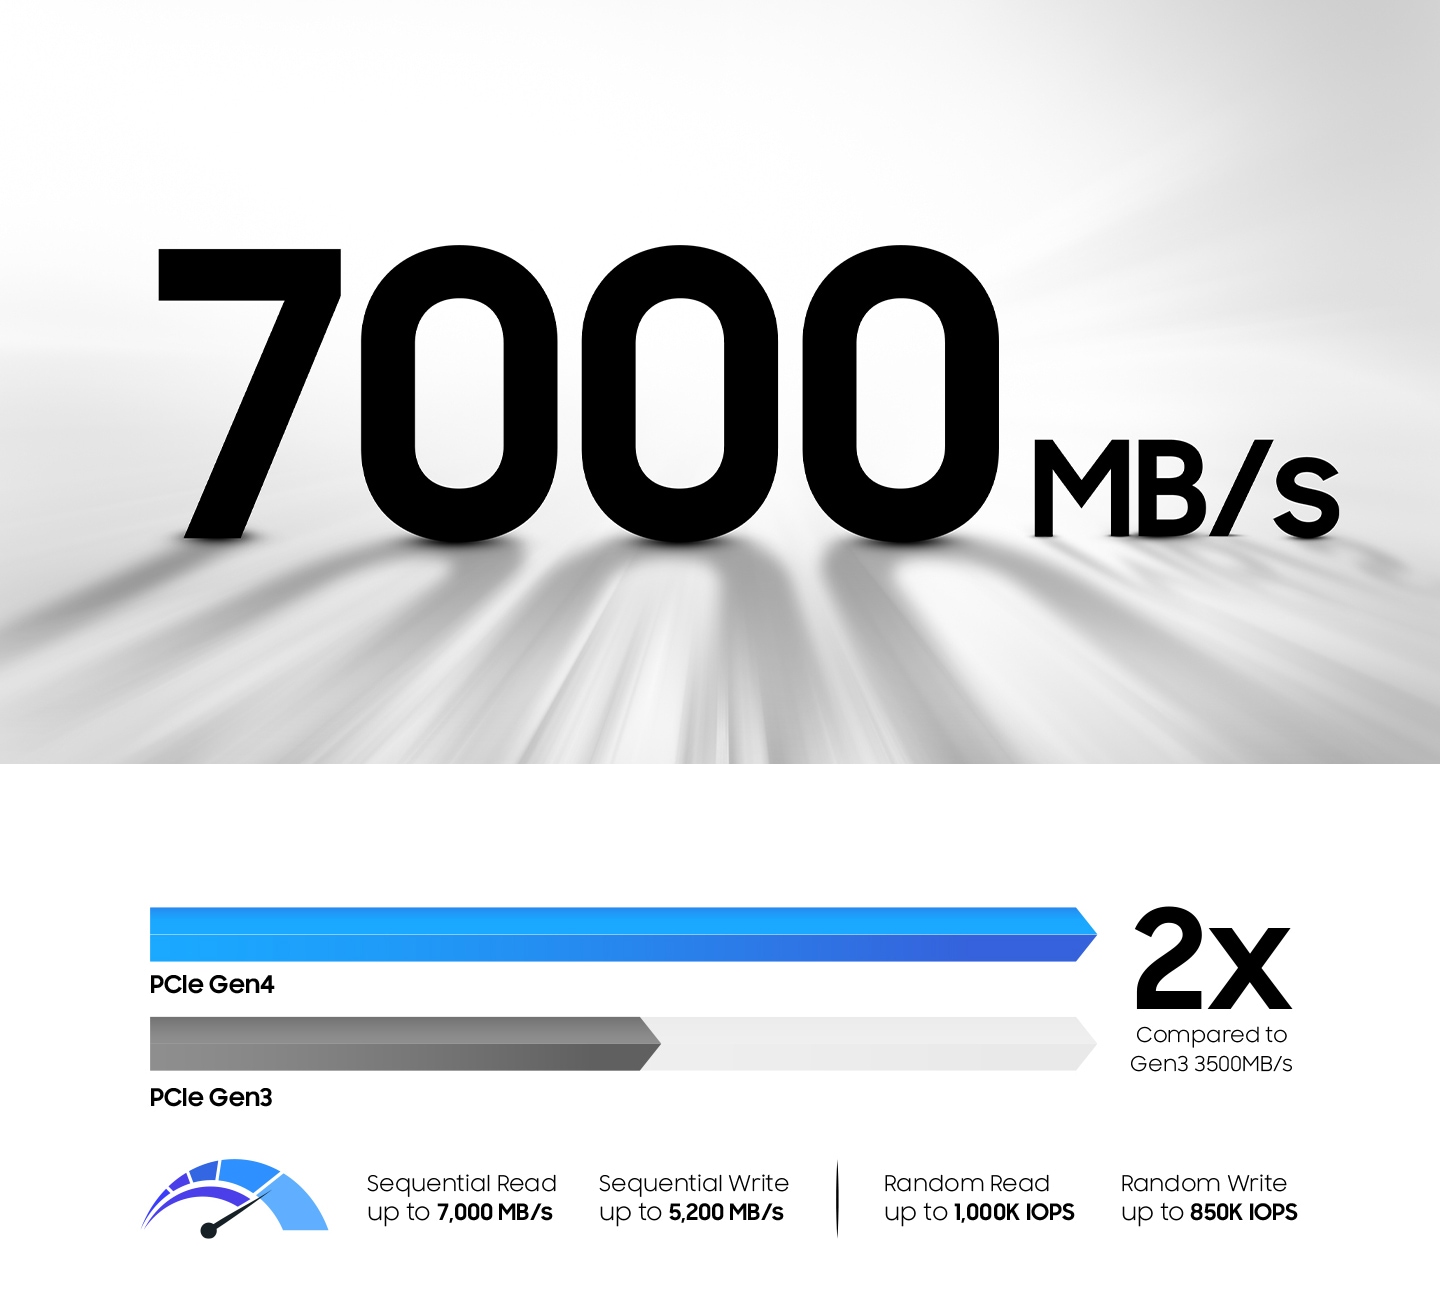 显示 Gen4 的顺序读取速度比上一代提高 50%，高达 7,000 MB/s 的示意图。